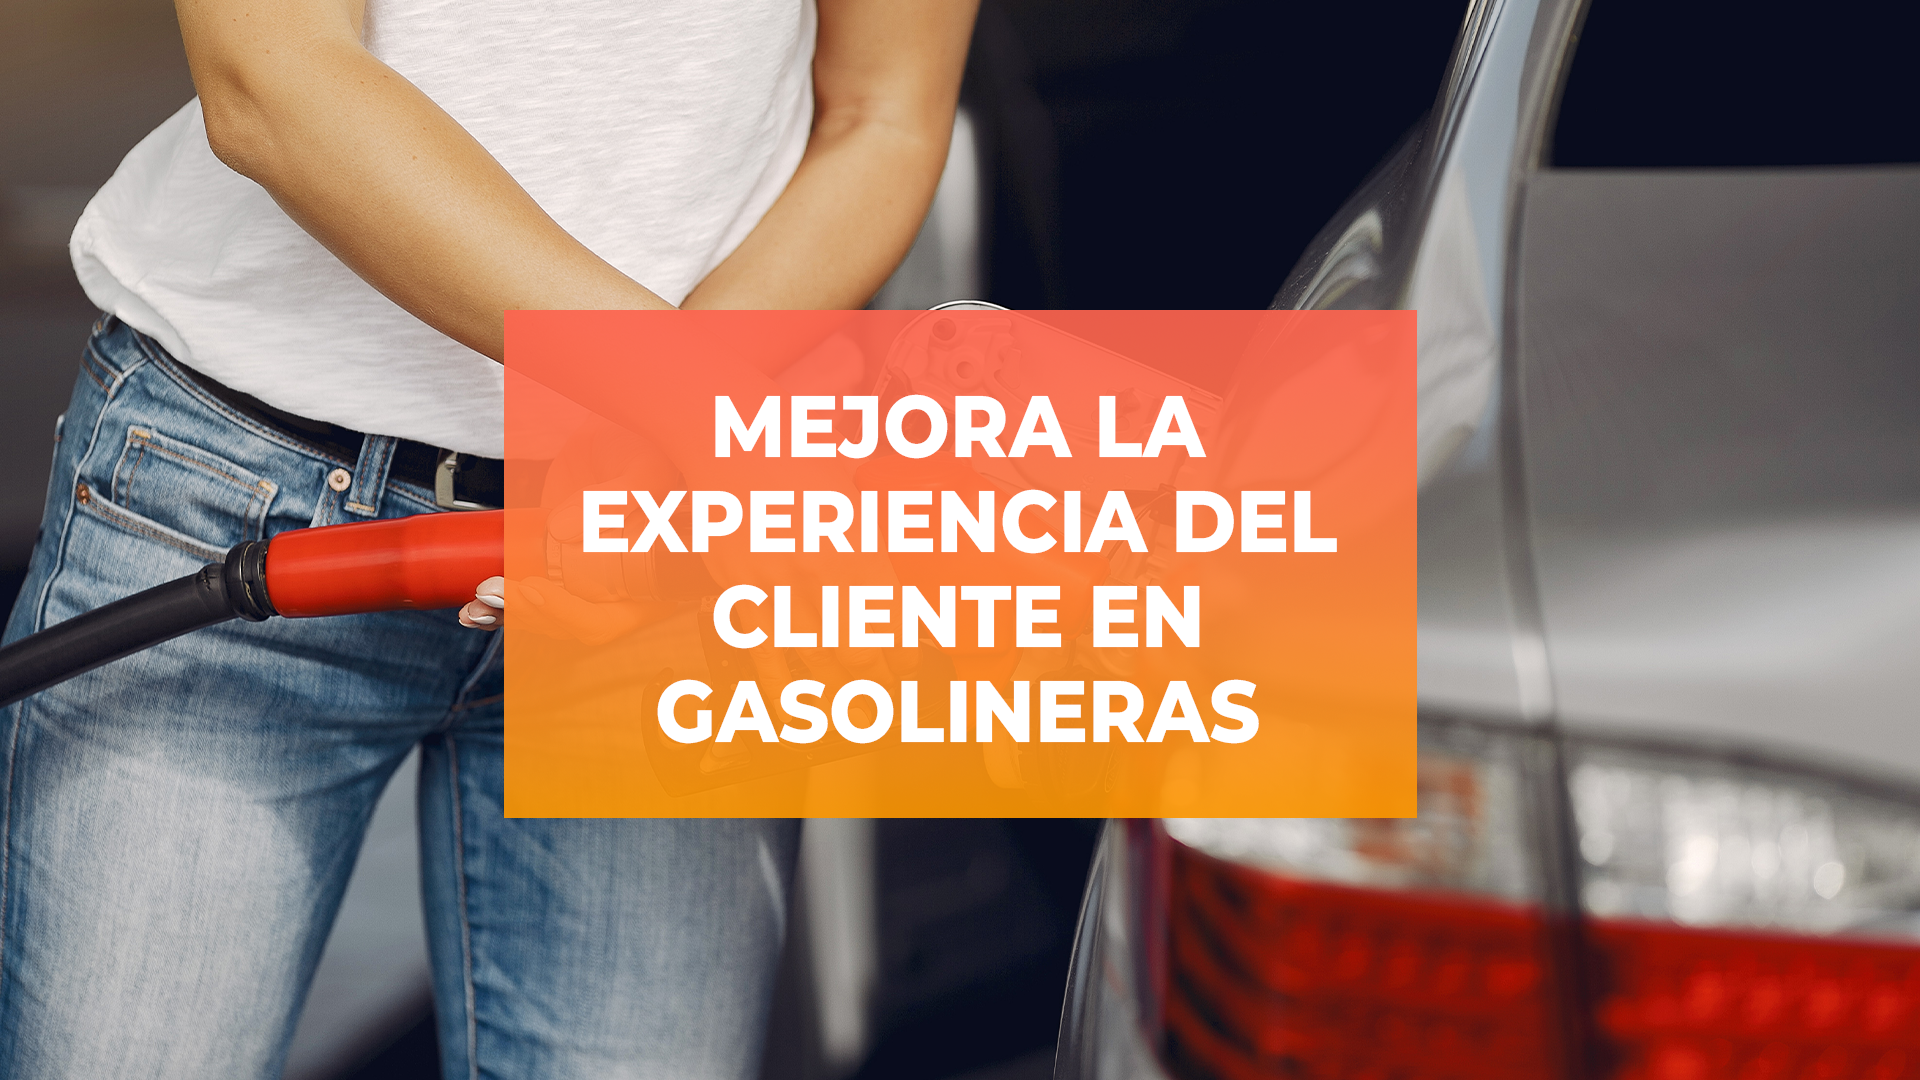 Mejorar la experiencia al cliente en gasolineras